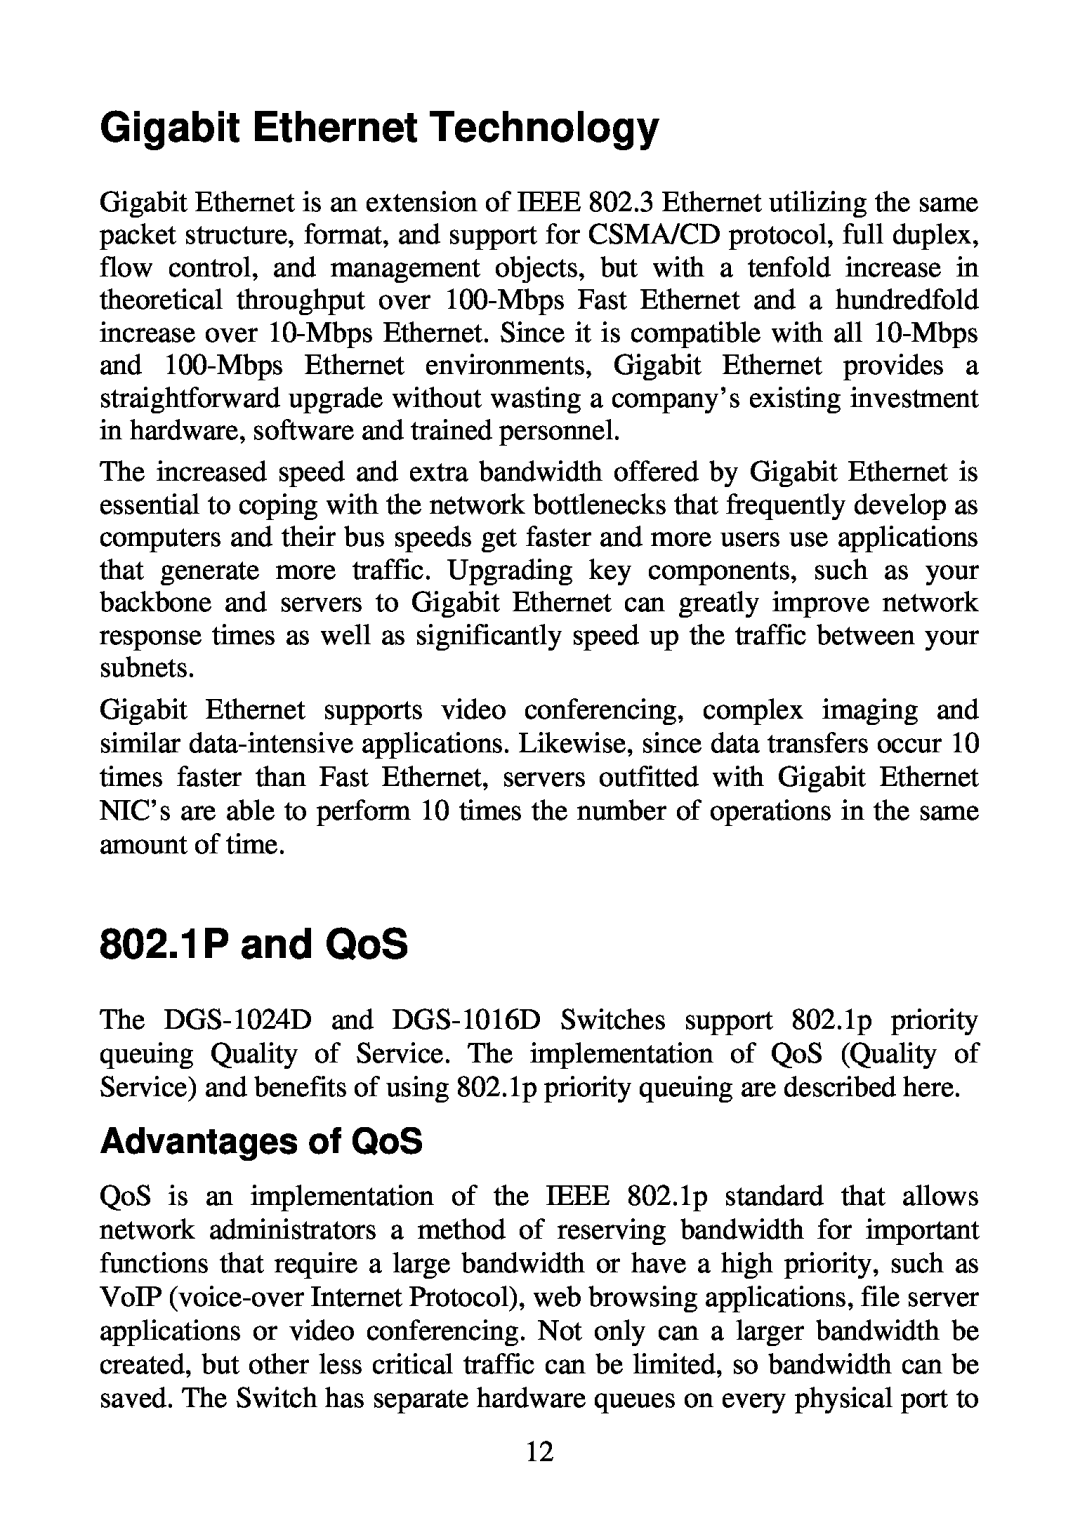 D-Link DGS-1024D, DGS-1016D manual Gigabit Ethernet Technology, 802.1P and QoS, Advantages of QoS 